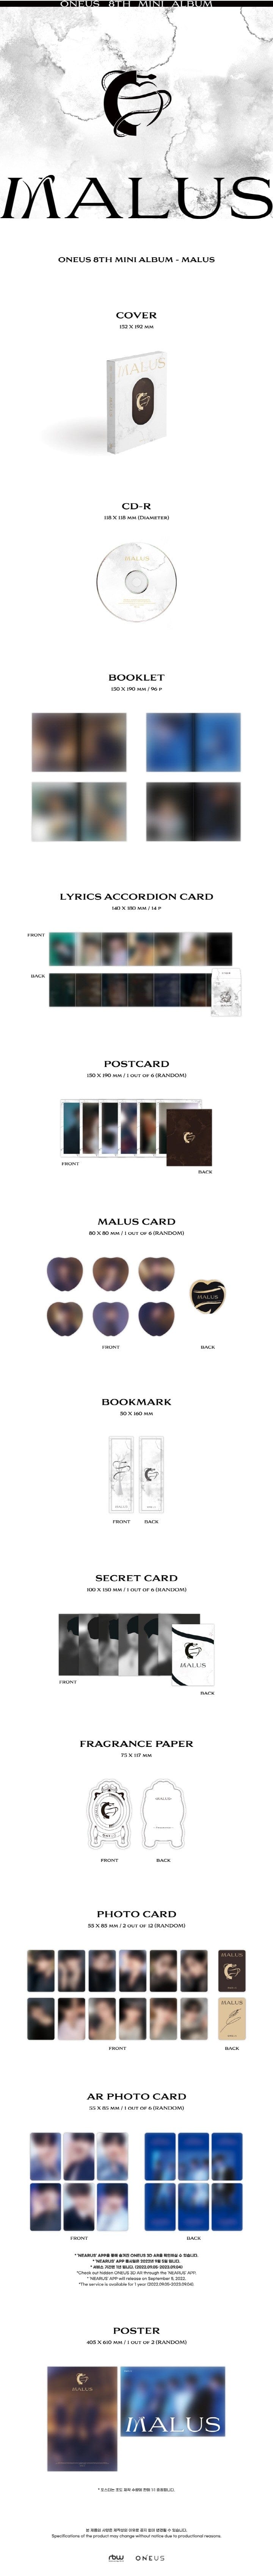 Korea Pop Store ONEUS - Malus (8th Mini Album) Kawaii Gifts